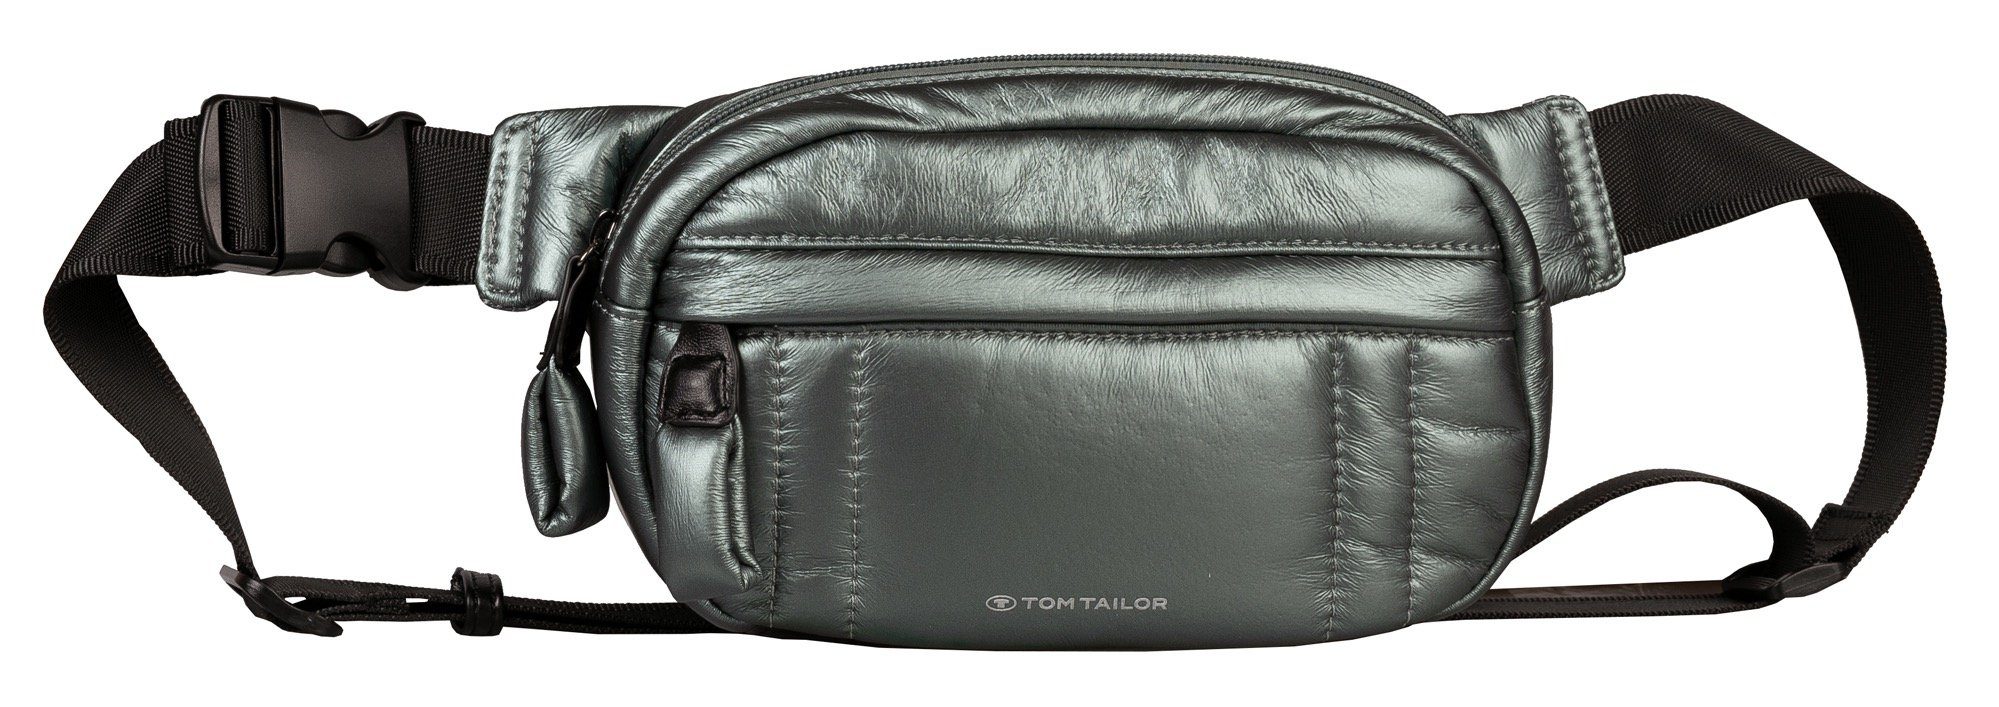 TOM TAILOR Bauchtasche Jody Belt bag, im praktischen Design